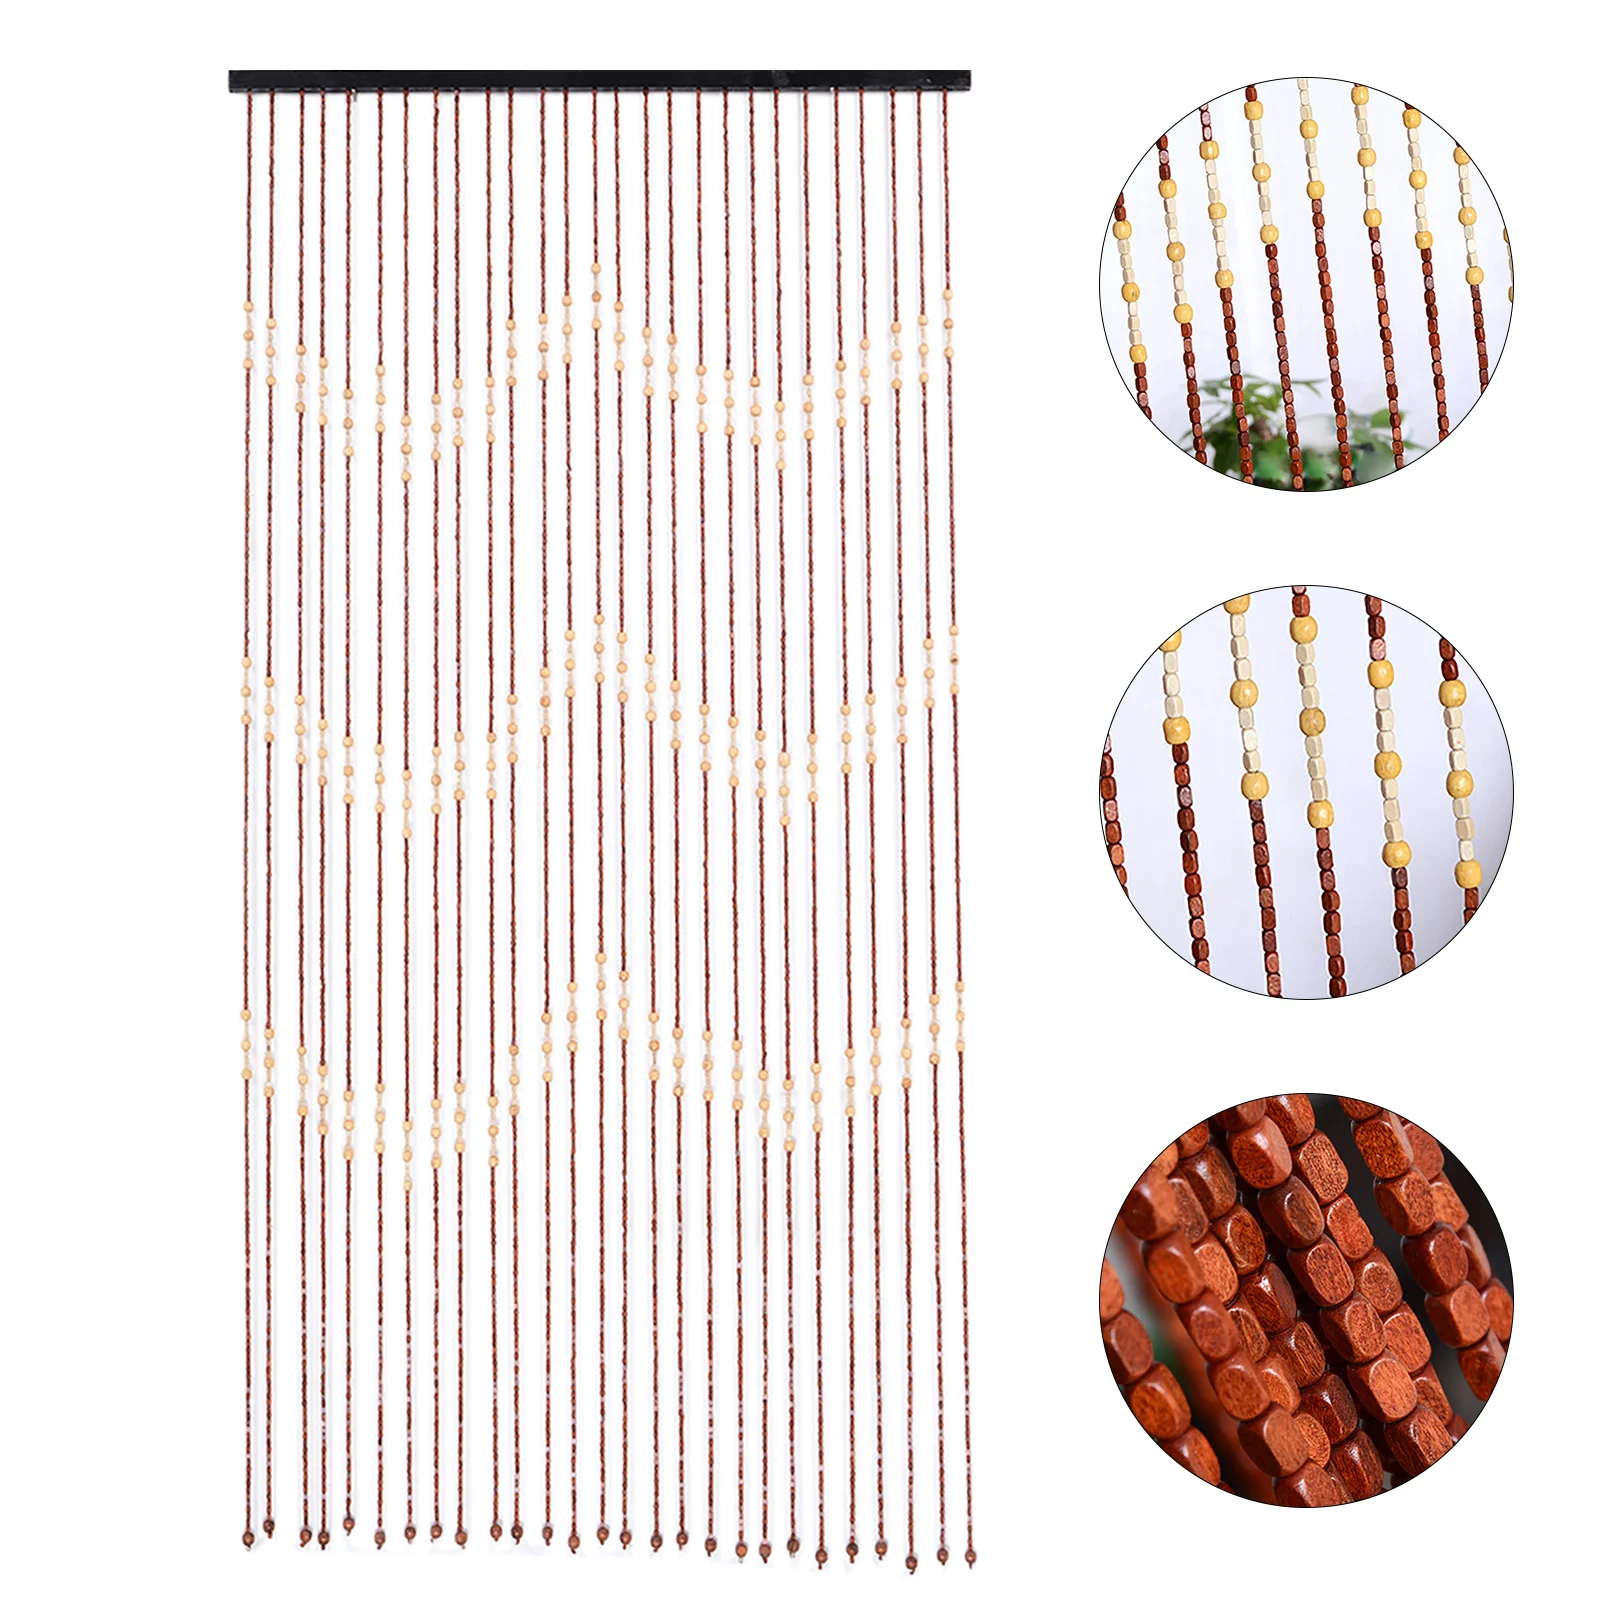 27 pramen vintage přírodní dřevo a bambus korálkový záclona létat obrazovka pro koupat ložnice verandě dveře